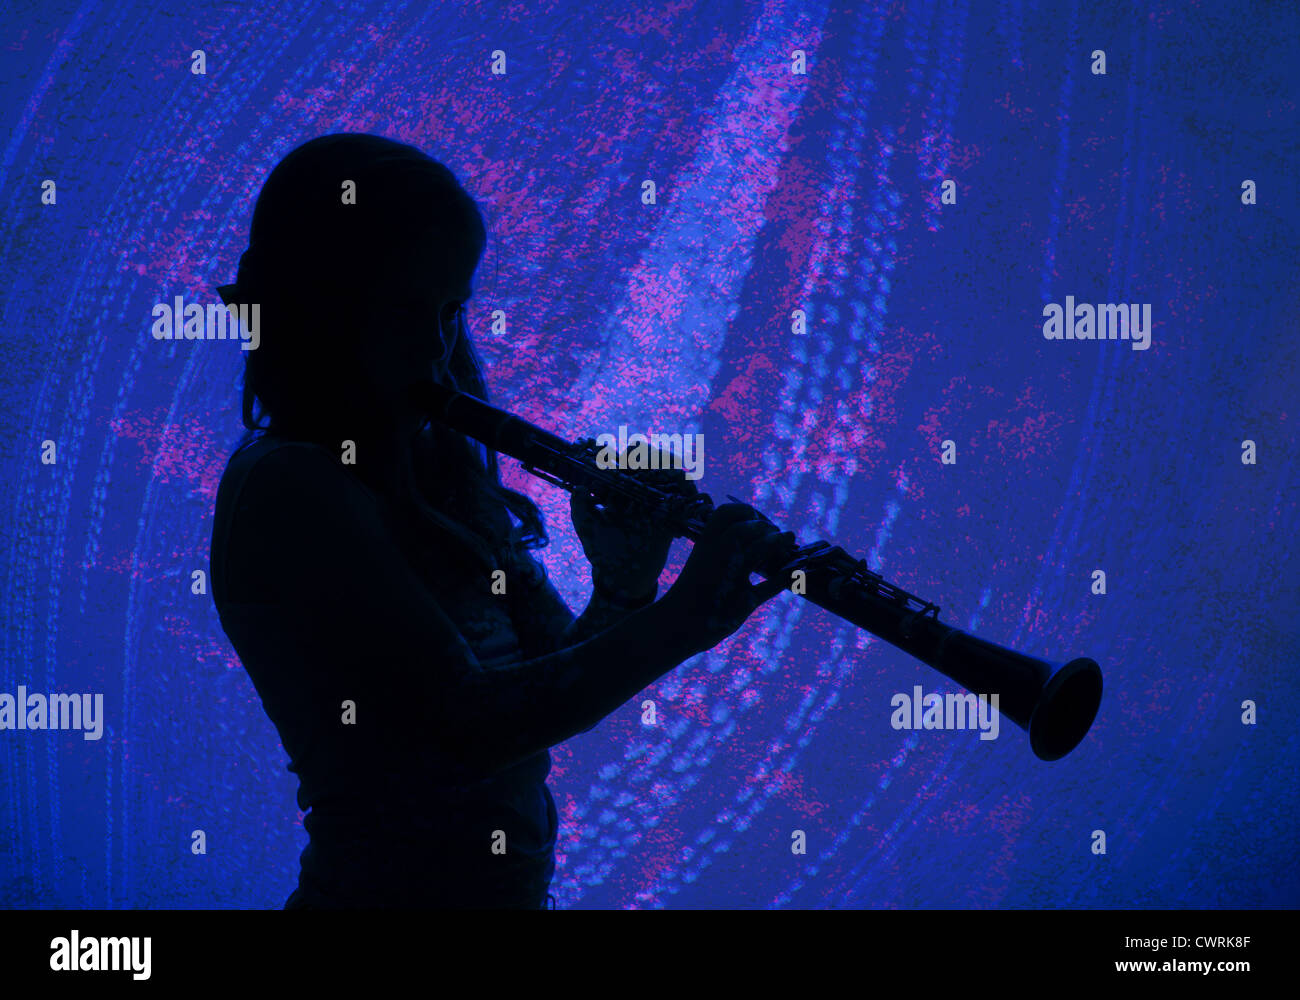 Ungewöhnliche hinterleuchtete Bild, eine Silhouette eines nicht identifizierbare Mädchen eine Klarinette zu spielen. Bild hat Muster überlagert es. Stockfoto